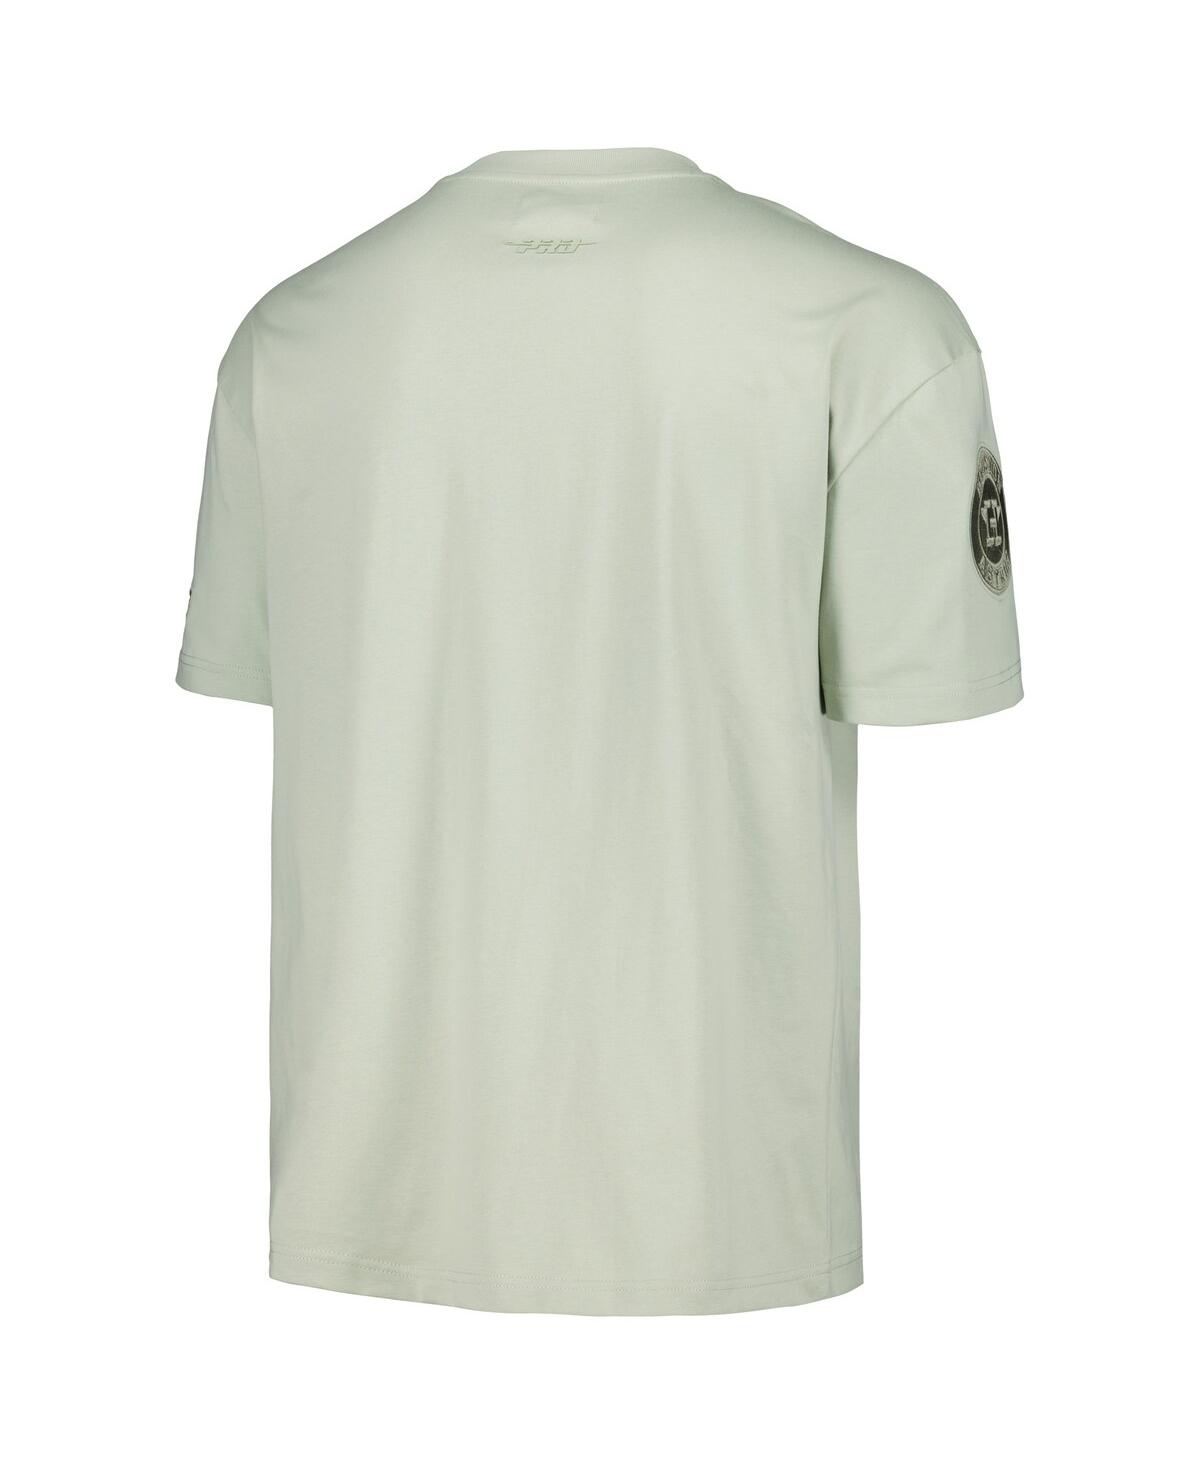 Shop Pro Standard Men's Mint Houston Astros Neutral Cj Dropped Shoulders T-shirt